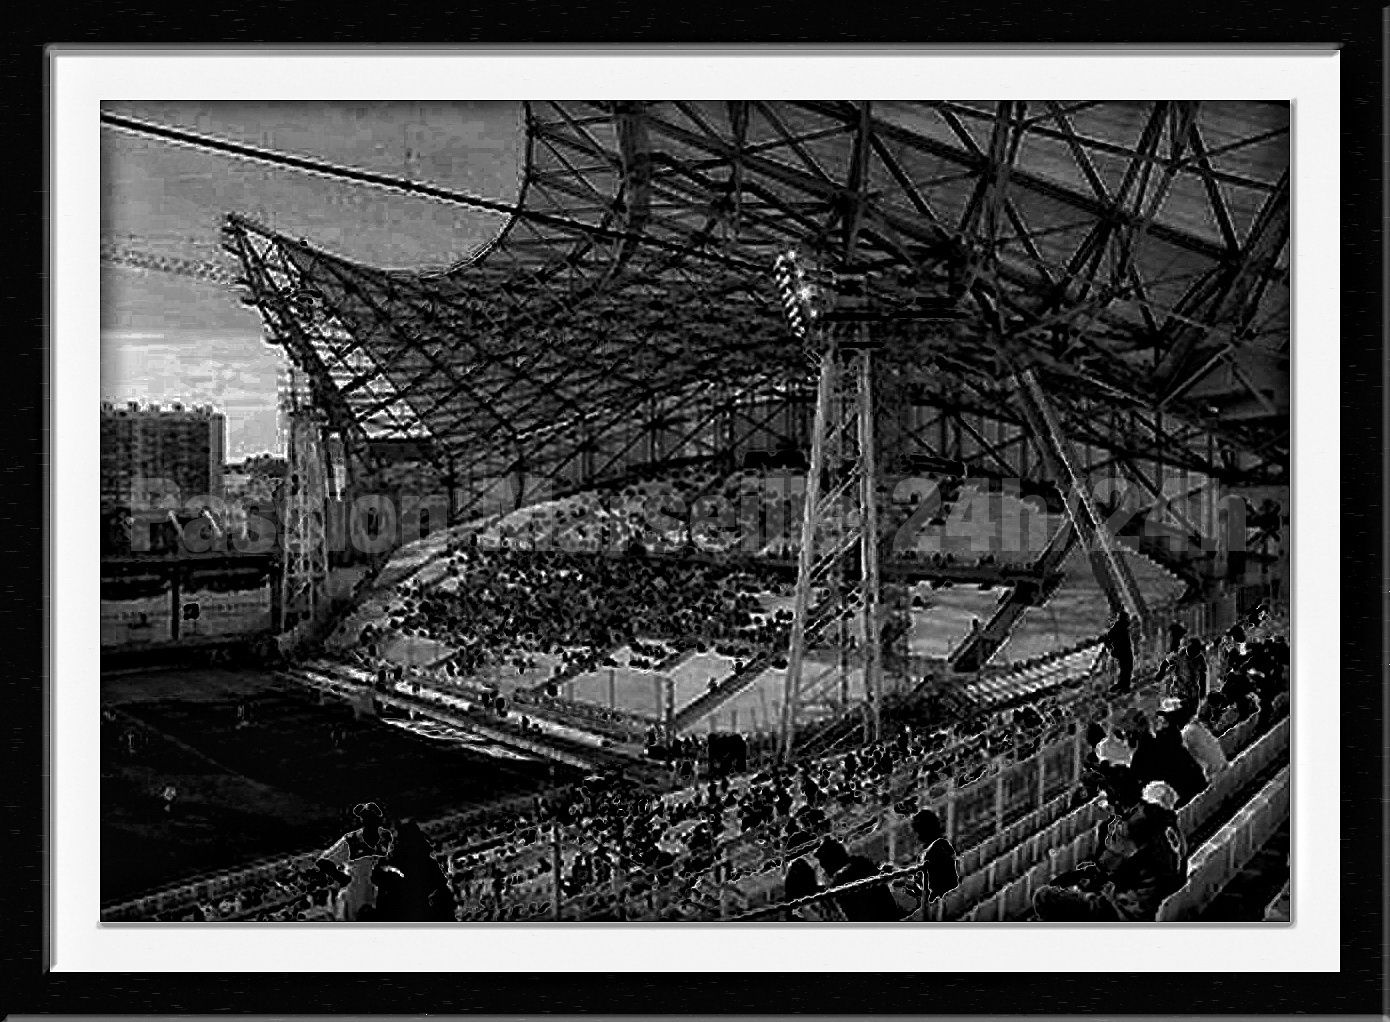 Stade Vélodrome, Olympique de Marseille, Stade Noir & Blanc, Cadeau  Football Lovers, Cadeau Olympique de Marseille Lovers -  France